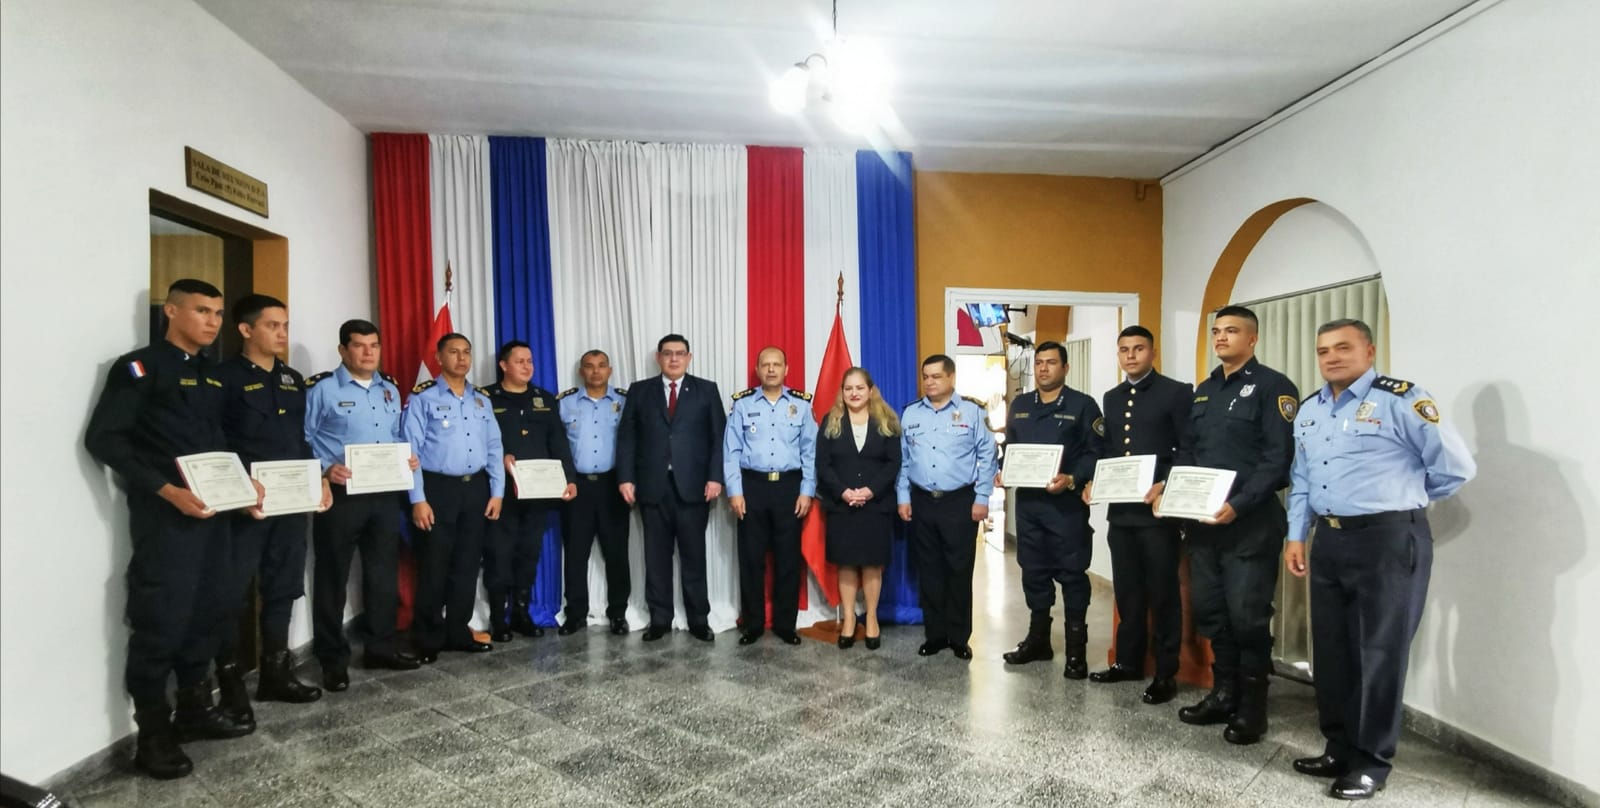 Reconocimiento al personal policial de las Comisarias 8ª y 3ª de Asunción por demostrar arrojo, valentía y eficiencia en cumplimiento del deber